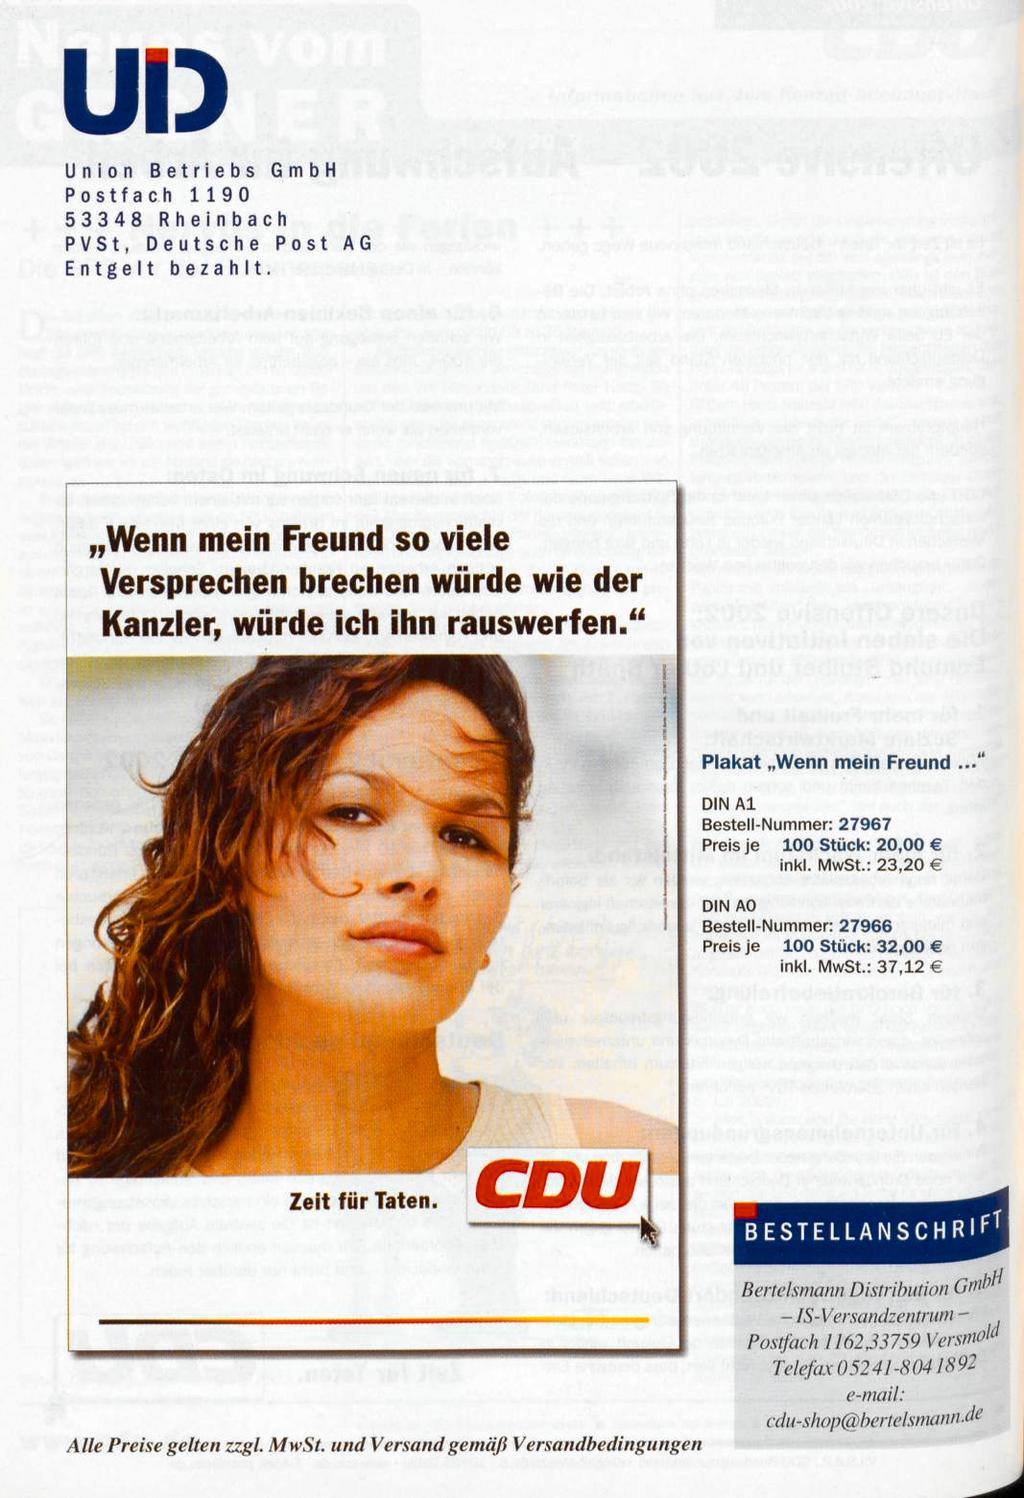 UD Union Betriebs GmbH Postfach 1190 53348 Rheinbach PVSt, Deutsche Post AG Entgelt bezahlt. Wenn mein Freund so viele Versprechen brechen würde wie der Kanzler, würde ich ihn rauswerfen.